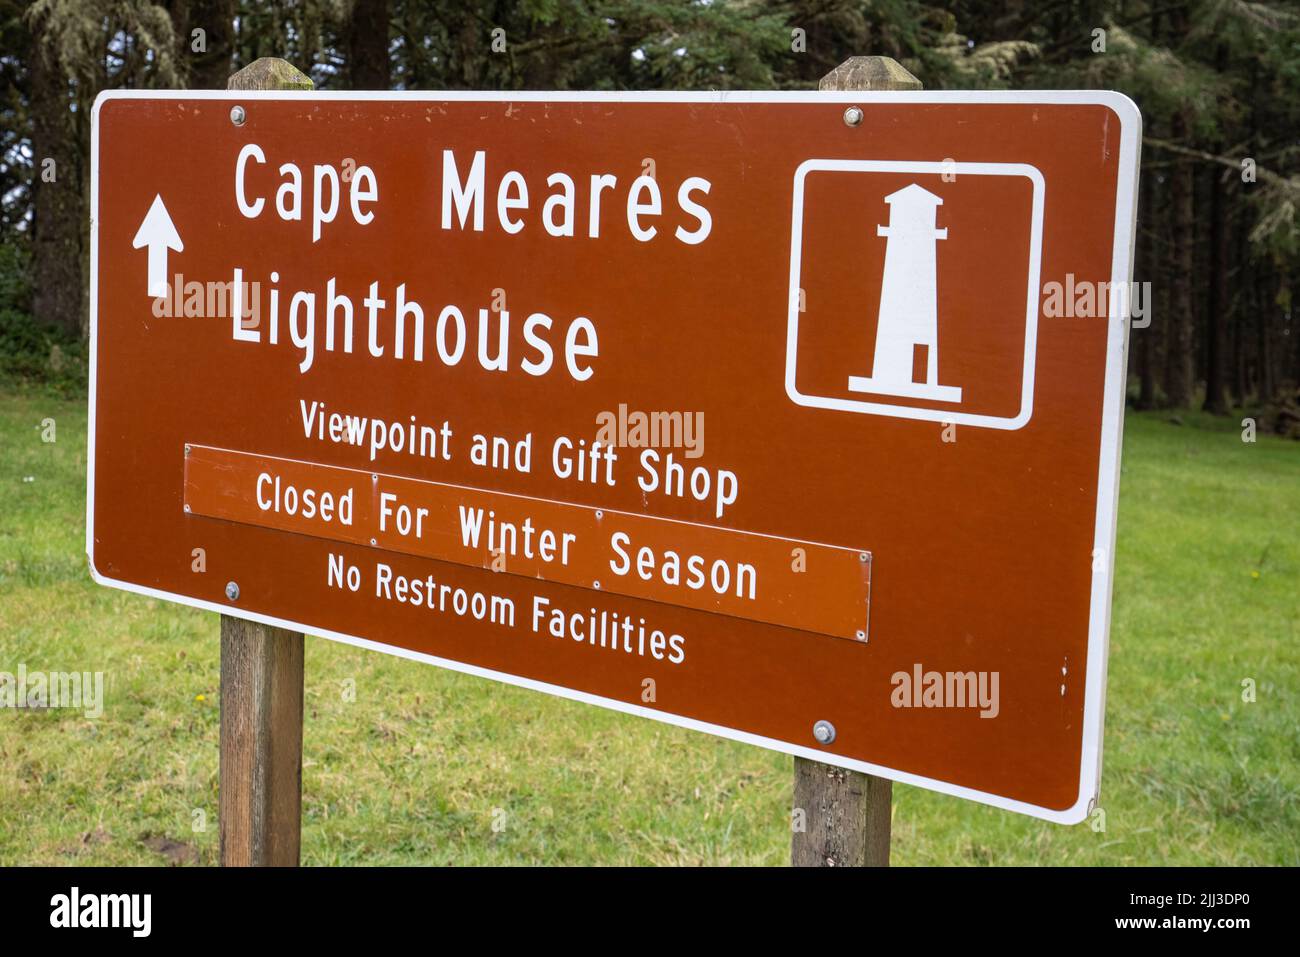 Il faro di Cape Meares è un faro sulla costa dell'Oregon. Si trova a Cape Meares, subito a sud della Baia di Tillamook. Foto Stock